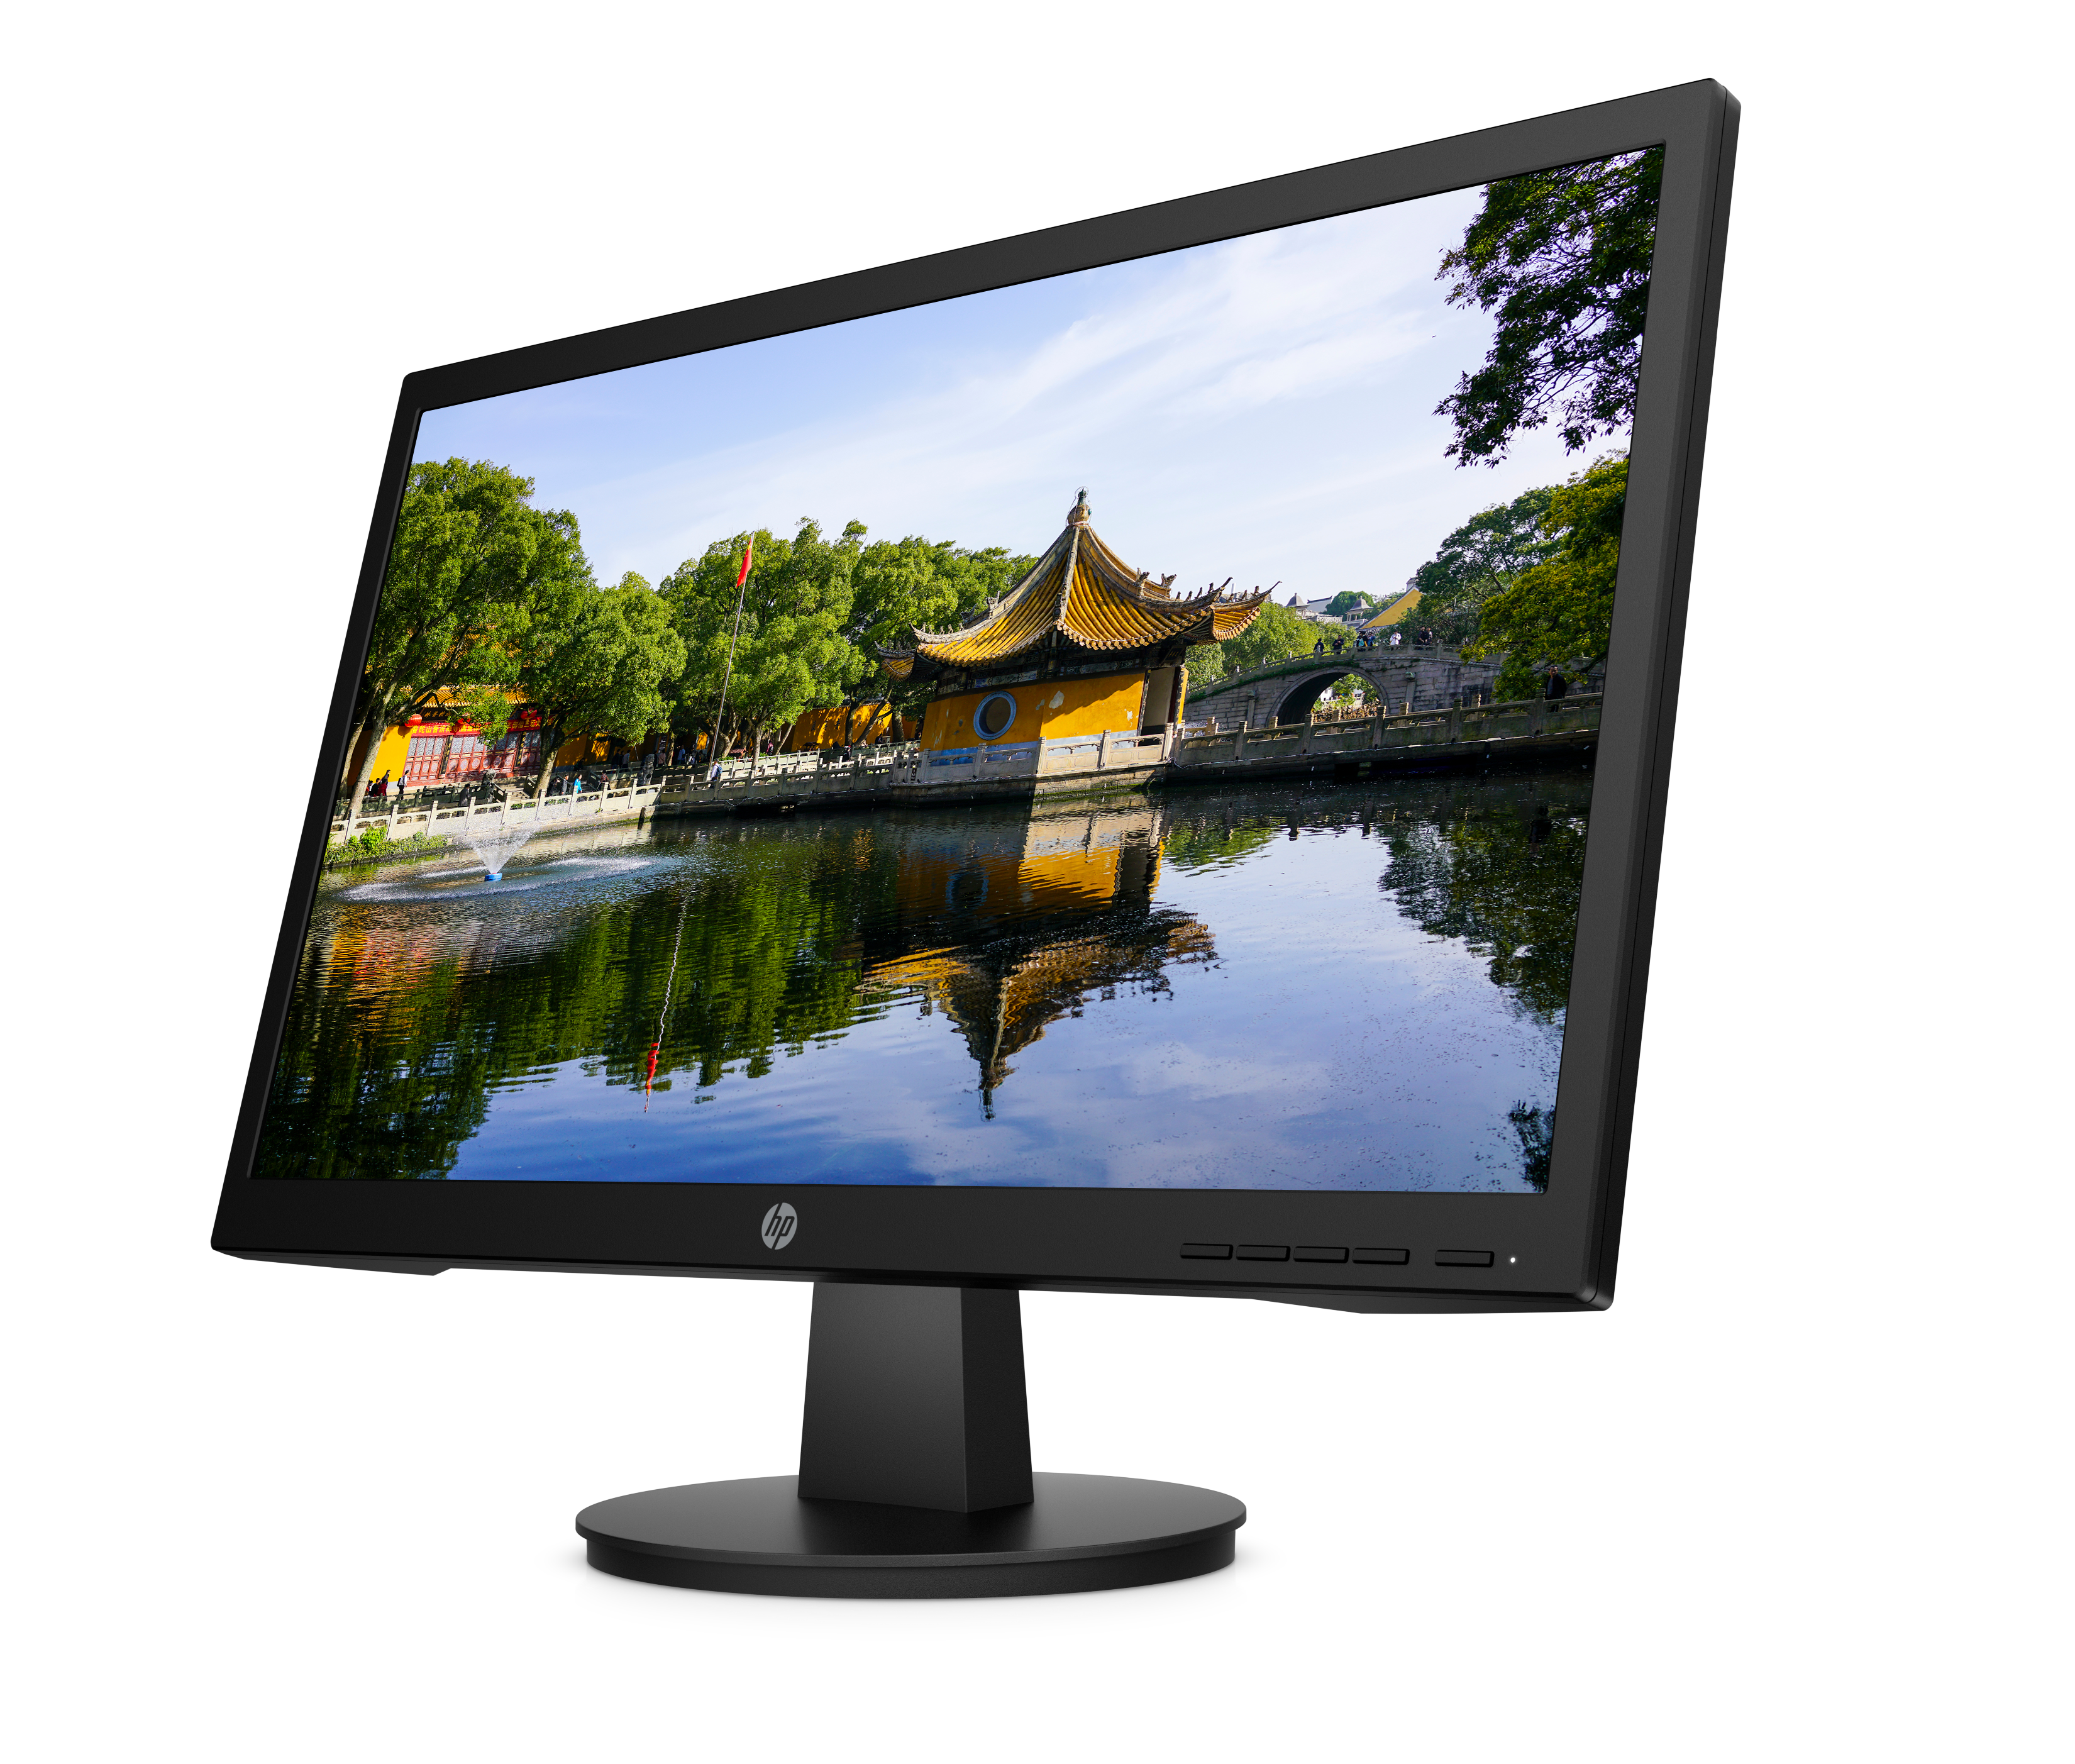 PC HP M01 F2004lam con procesador amd ryzen 5 solo monitor